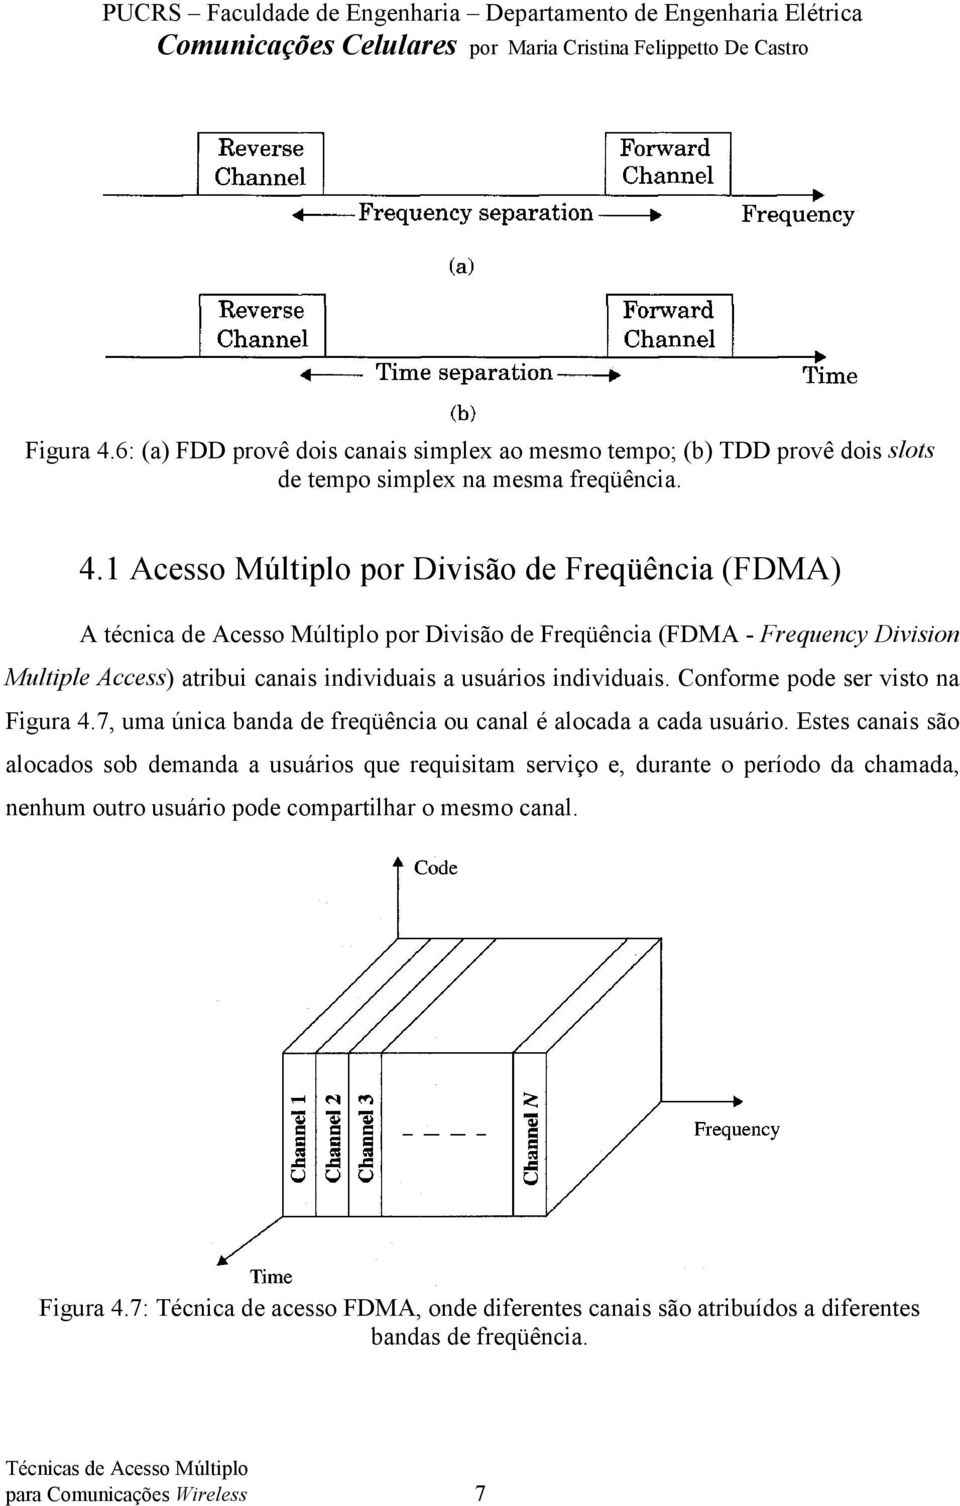 1 Acesso Múltiplo por Divisão de Freqüência (FDMA) A técnica de Acesso Múltiplo por Divisão de Freqüência (FDMA - Frequency Division Multiple Access) atribui canais individuais a